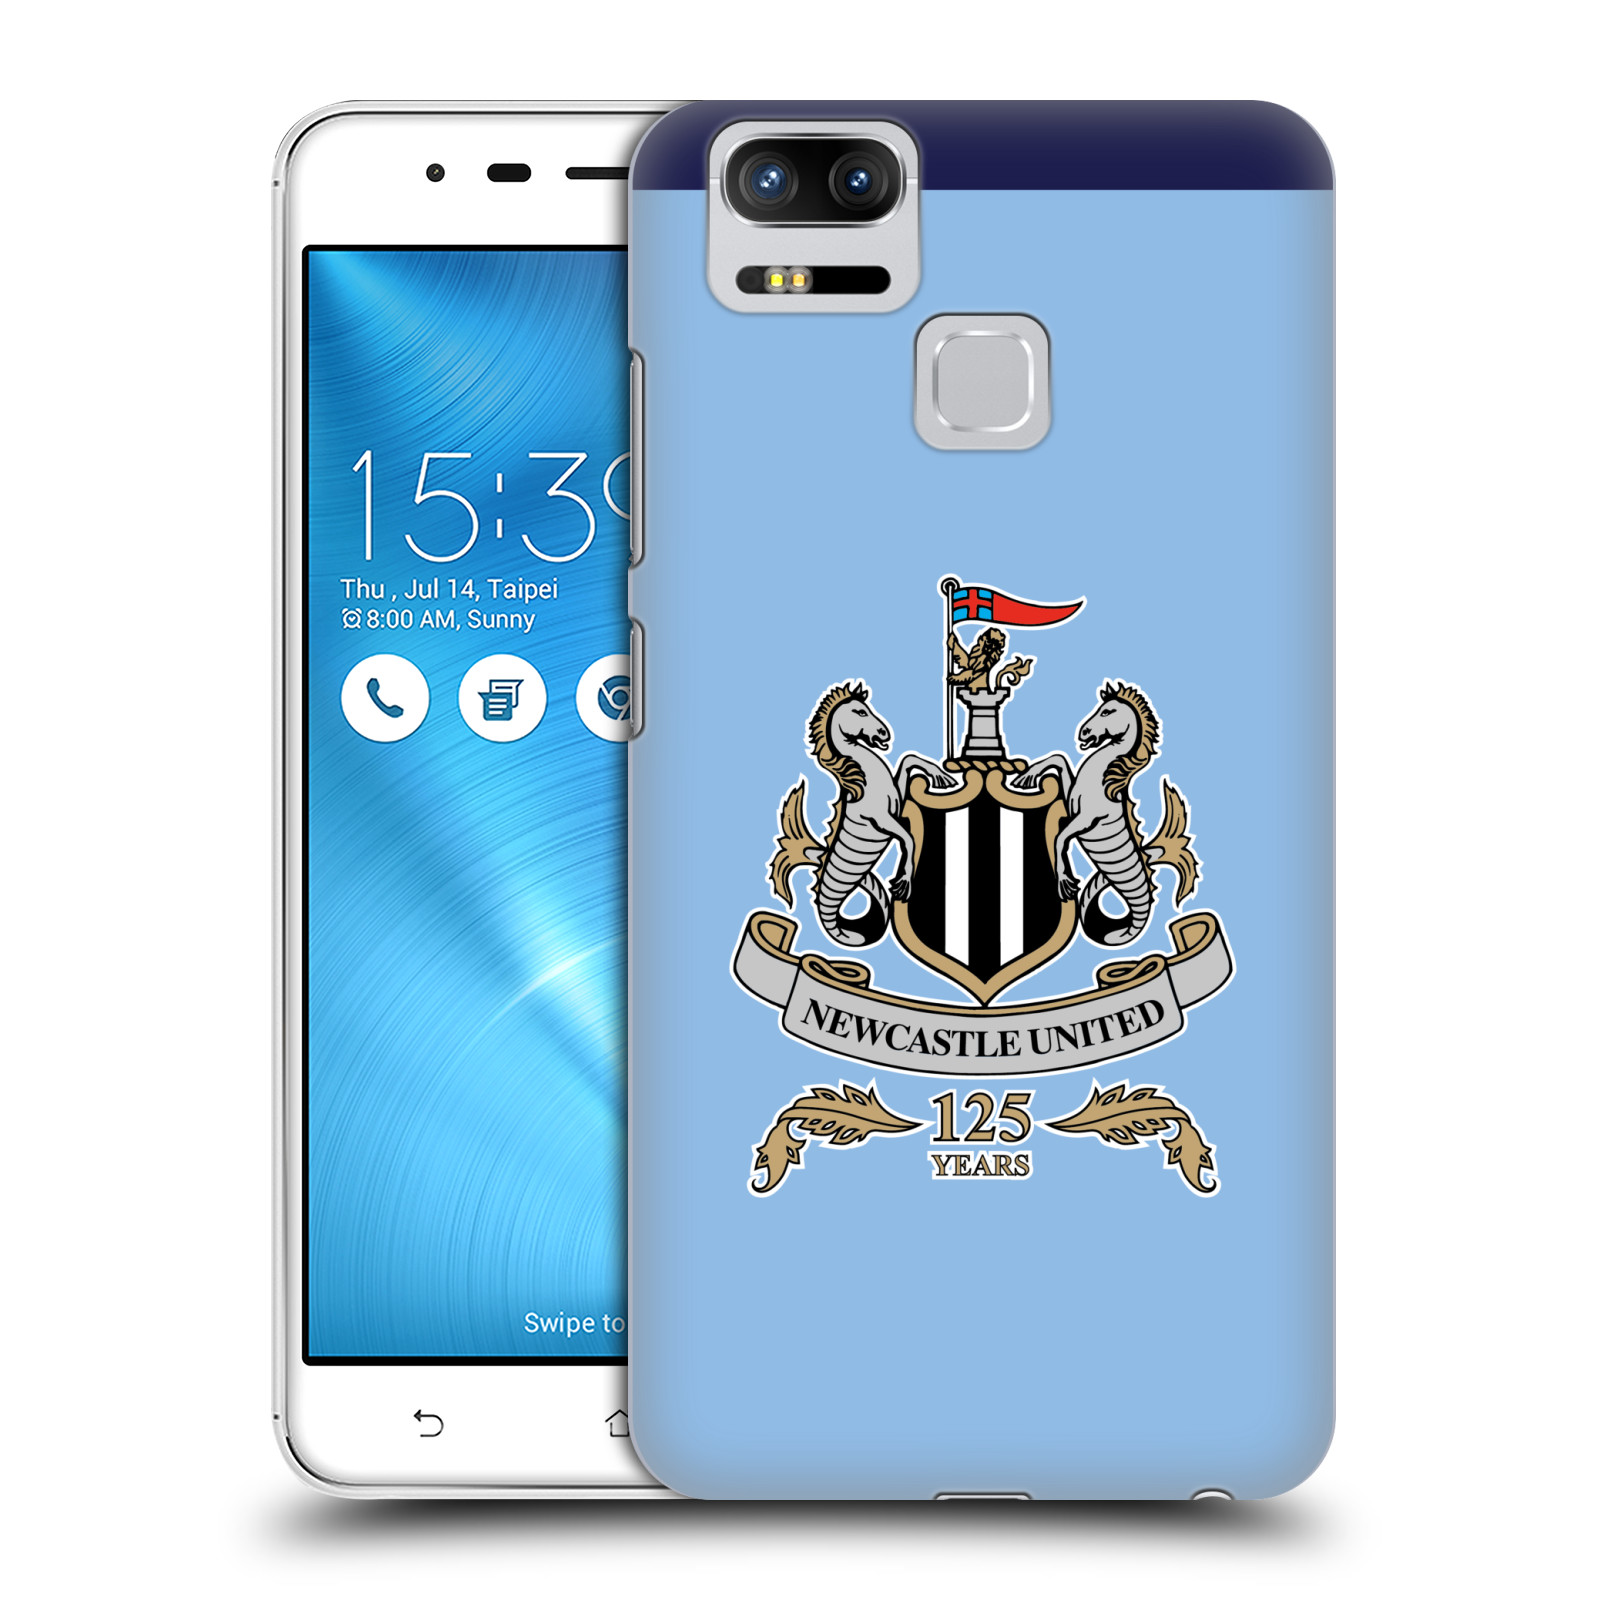 HEAD CASE plastový obal na mobil Asus Zenfone 3 Zoom ZE553KL Fotbalový klub Newcastle United FC velký znak na modrém pozadí